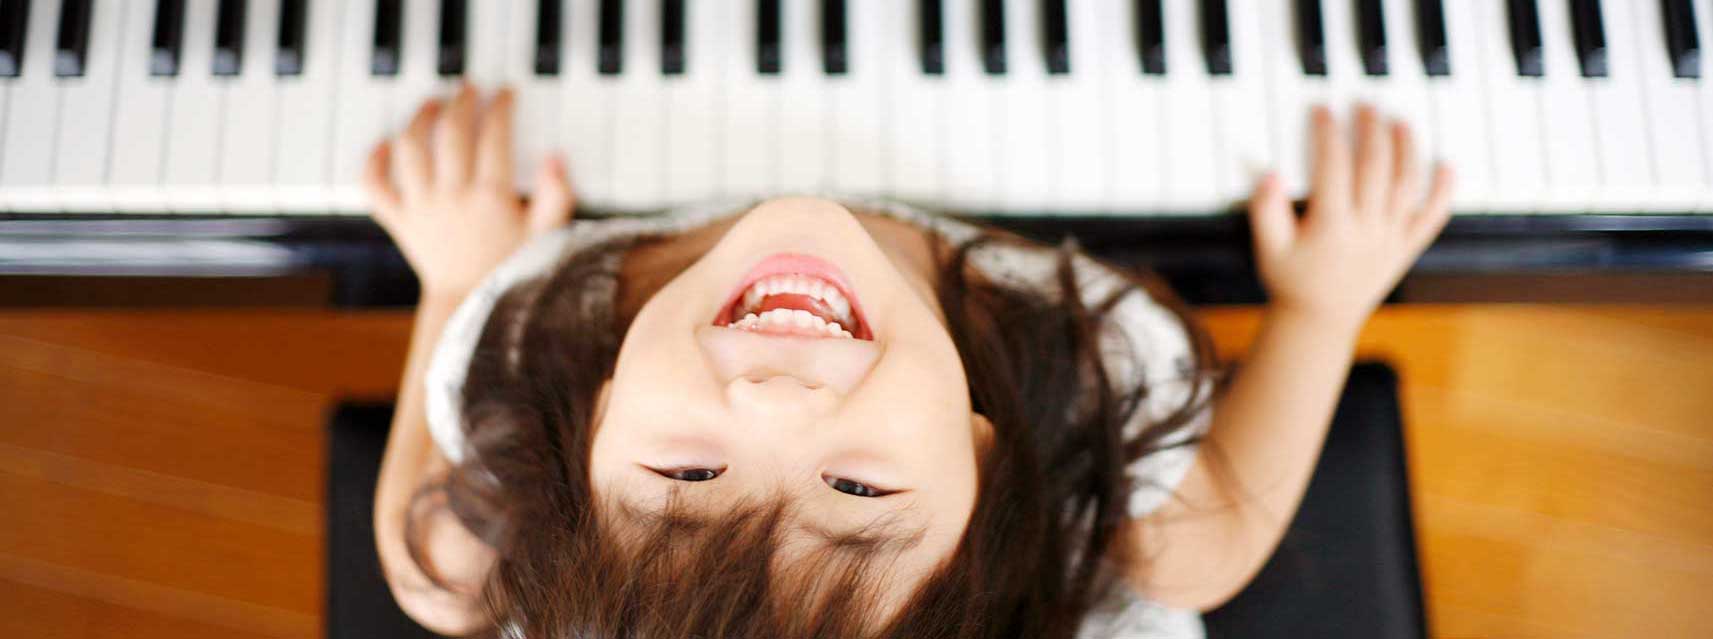 happy girl at piano